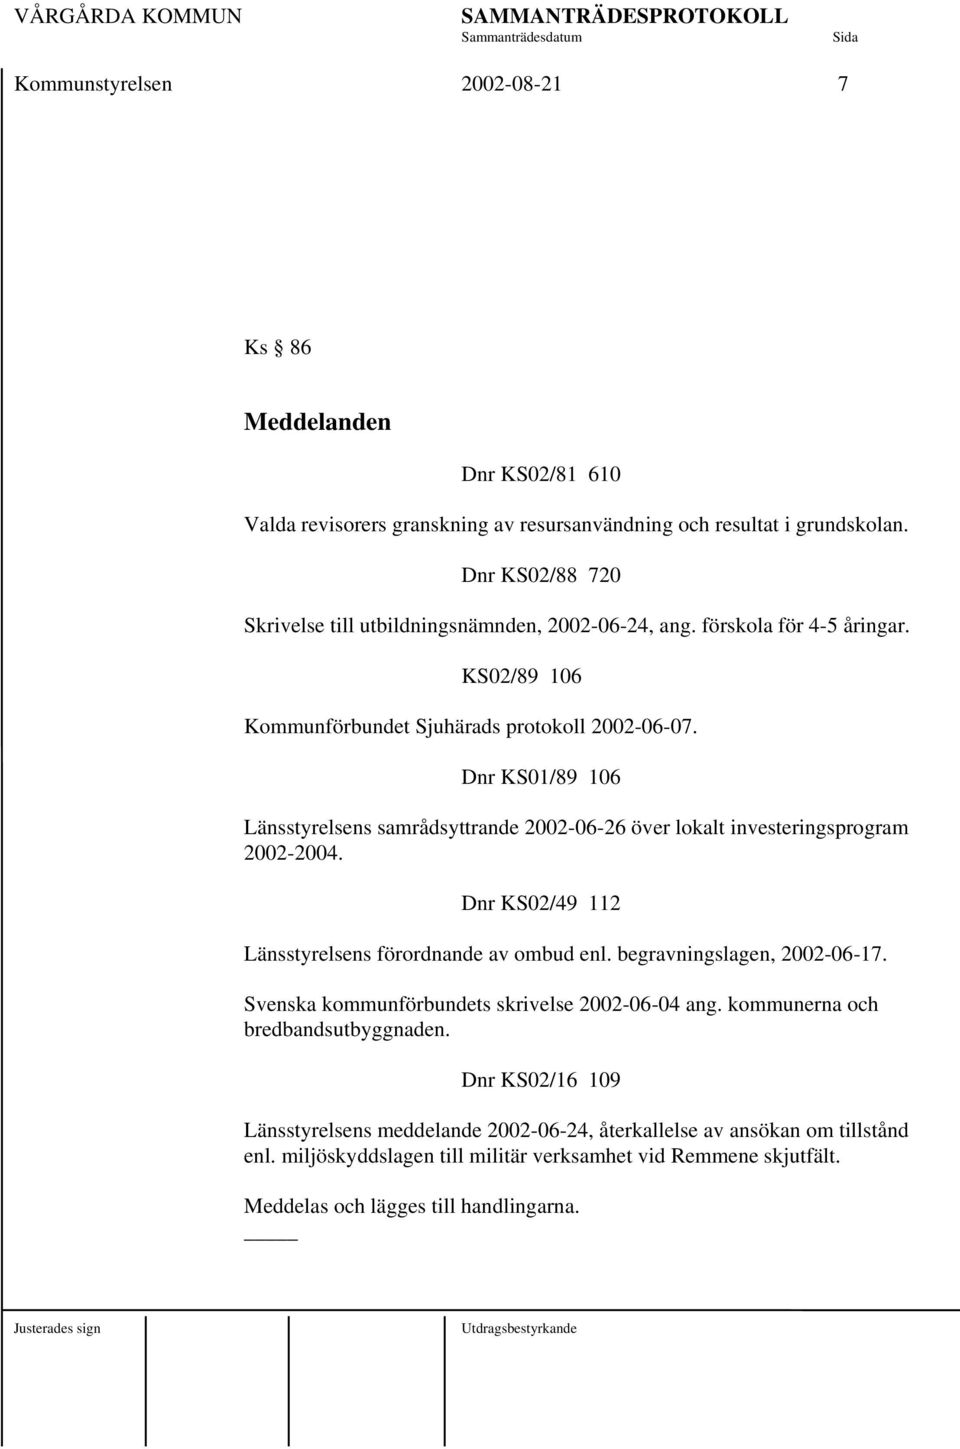 Dnr KS01/89 106 Länsstyrelsens samrådsyttrande 2002-06-26 över lokalt investeringsprogram 2002-2004. Dnr KS02/49 112 Länsstyrelsens förordnande av ombud enl. begravningslagen, 2002-06-17.